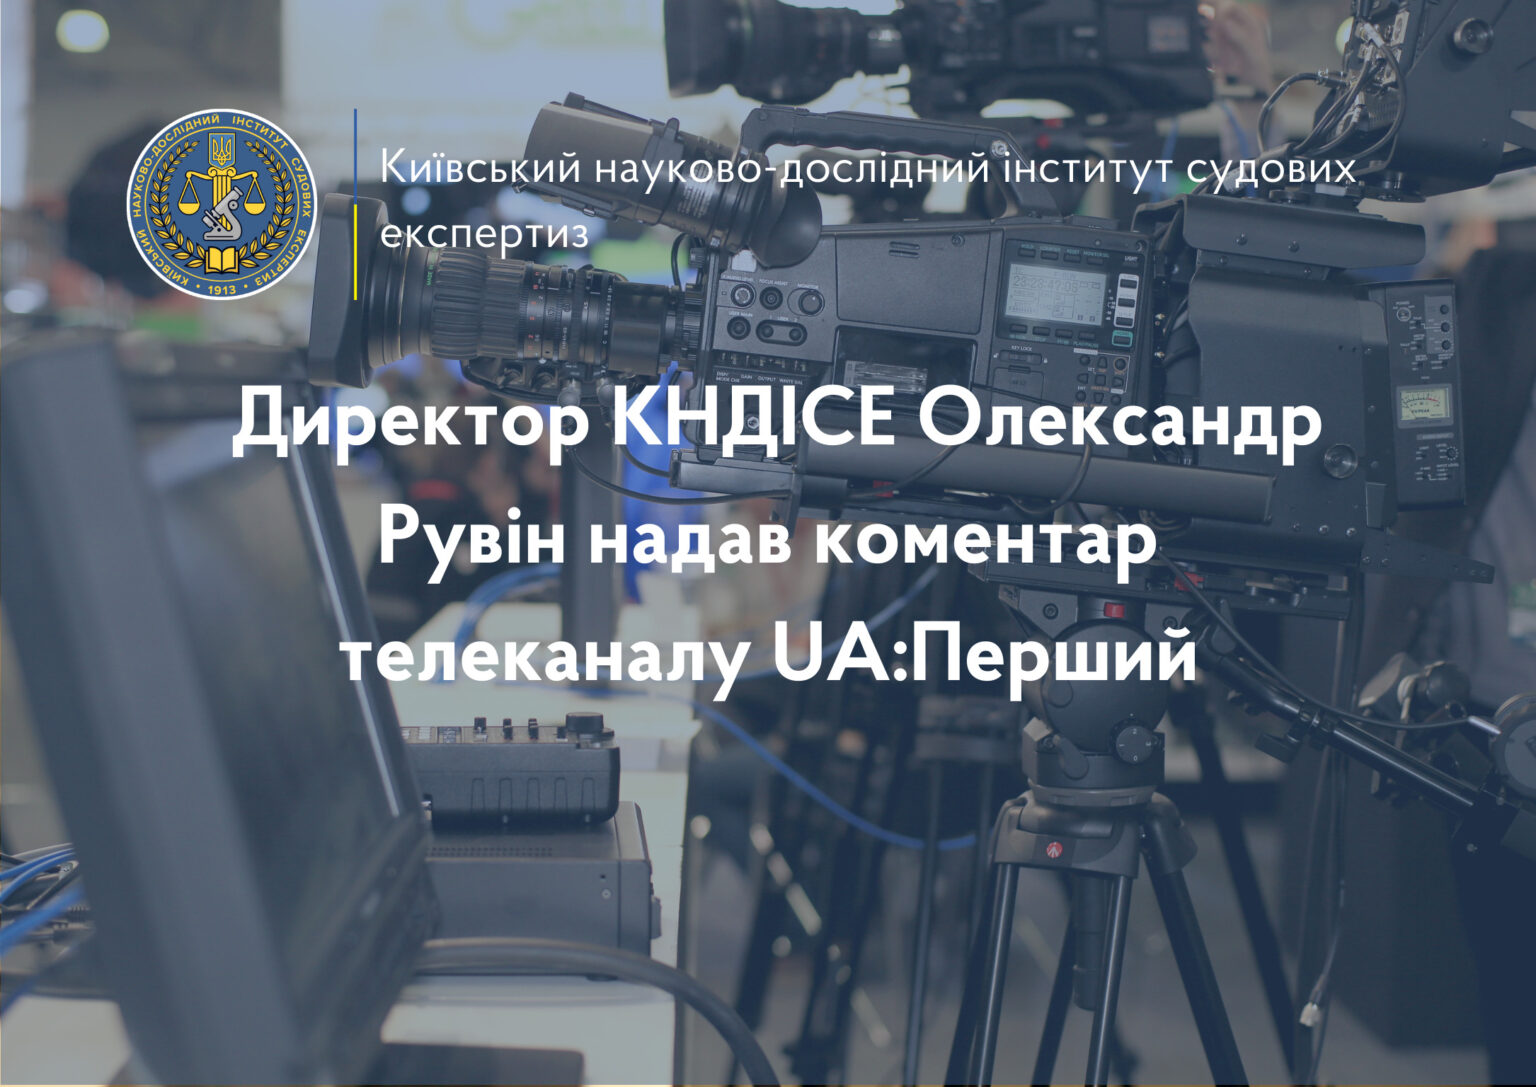 Директор КНДІСЕ Олександр Рувін надав коментар телеканалу UA:Перший